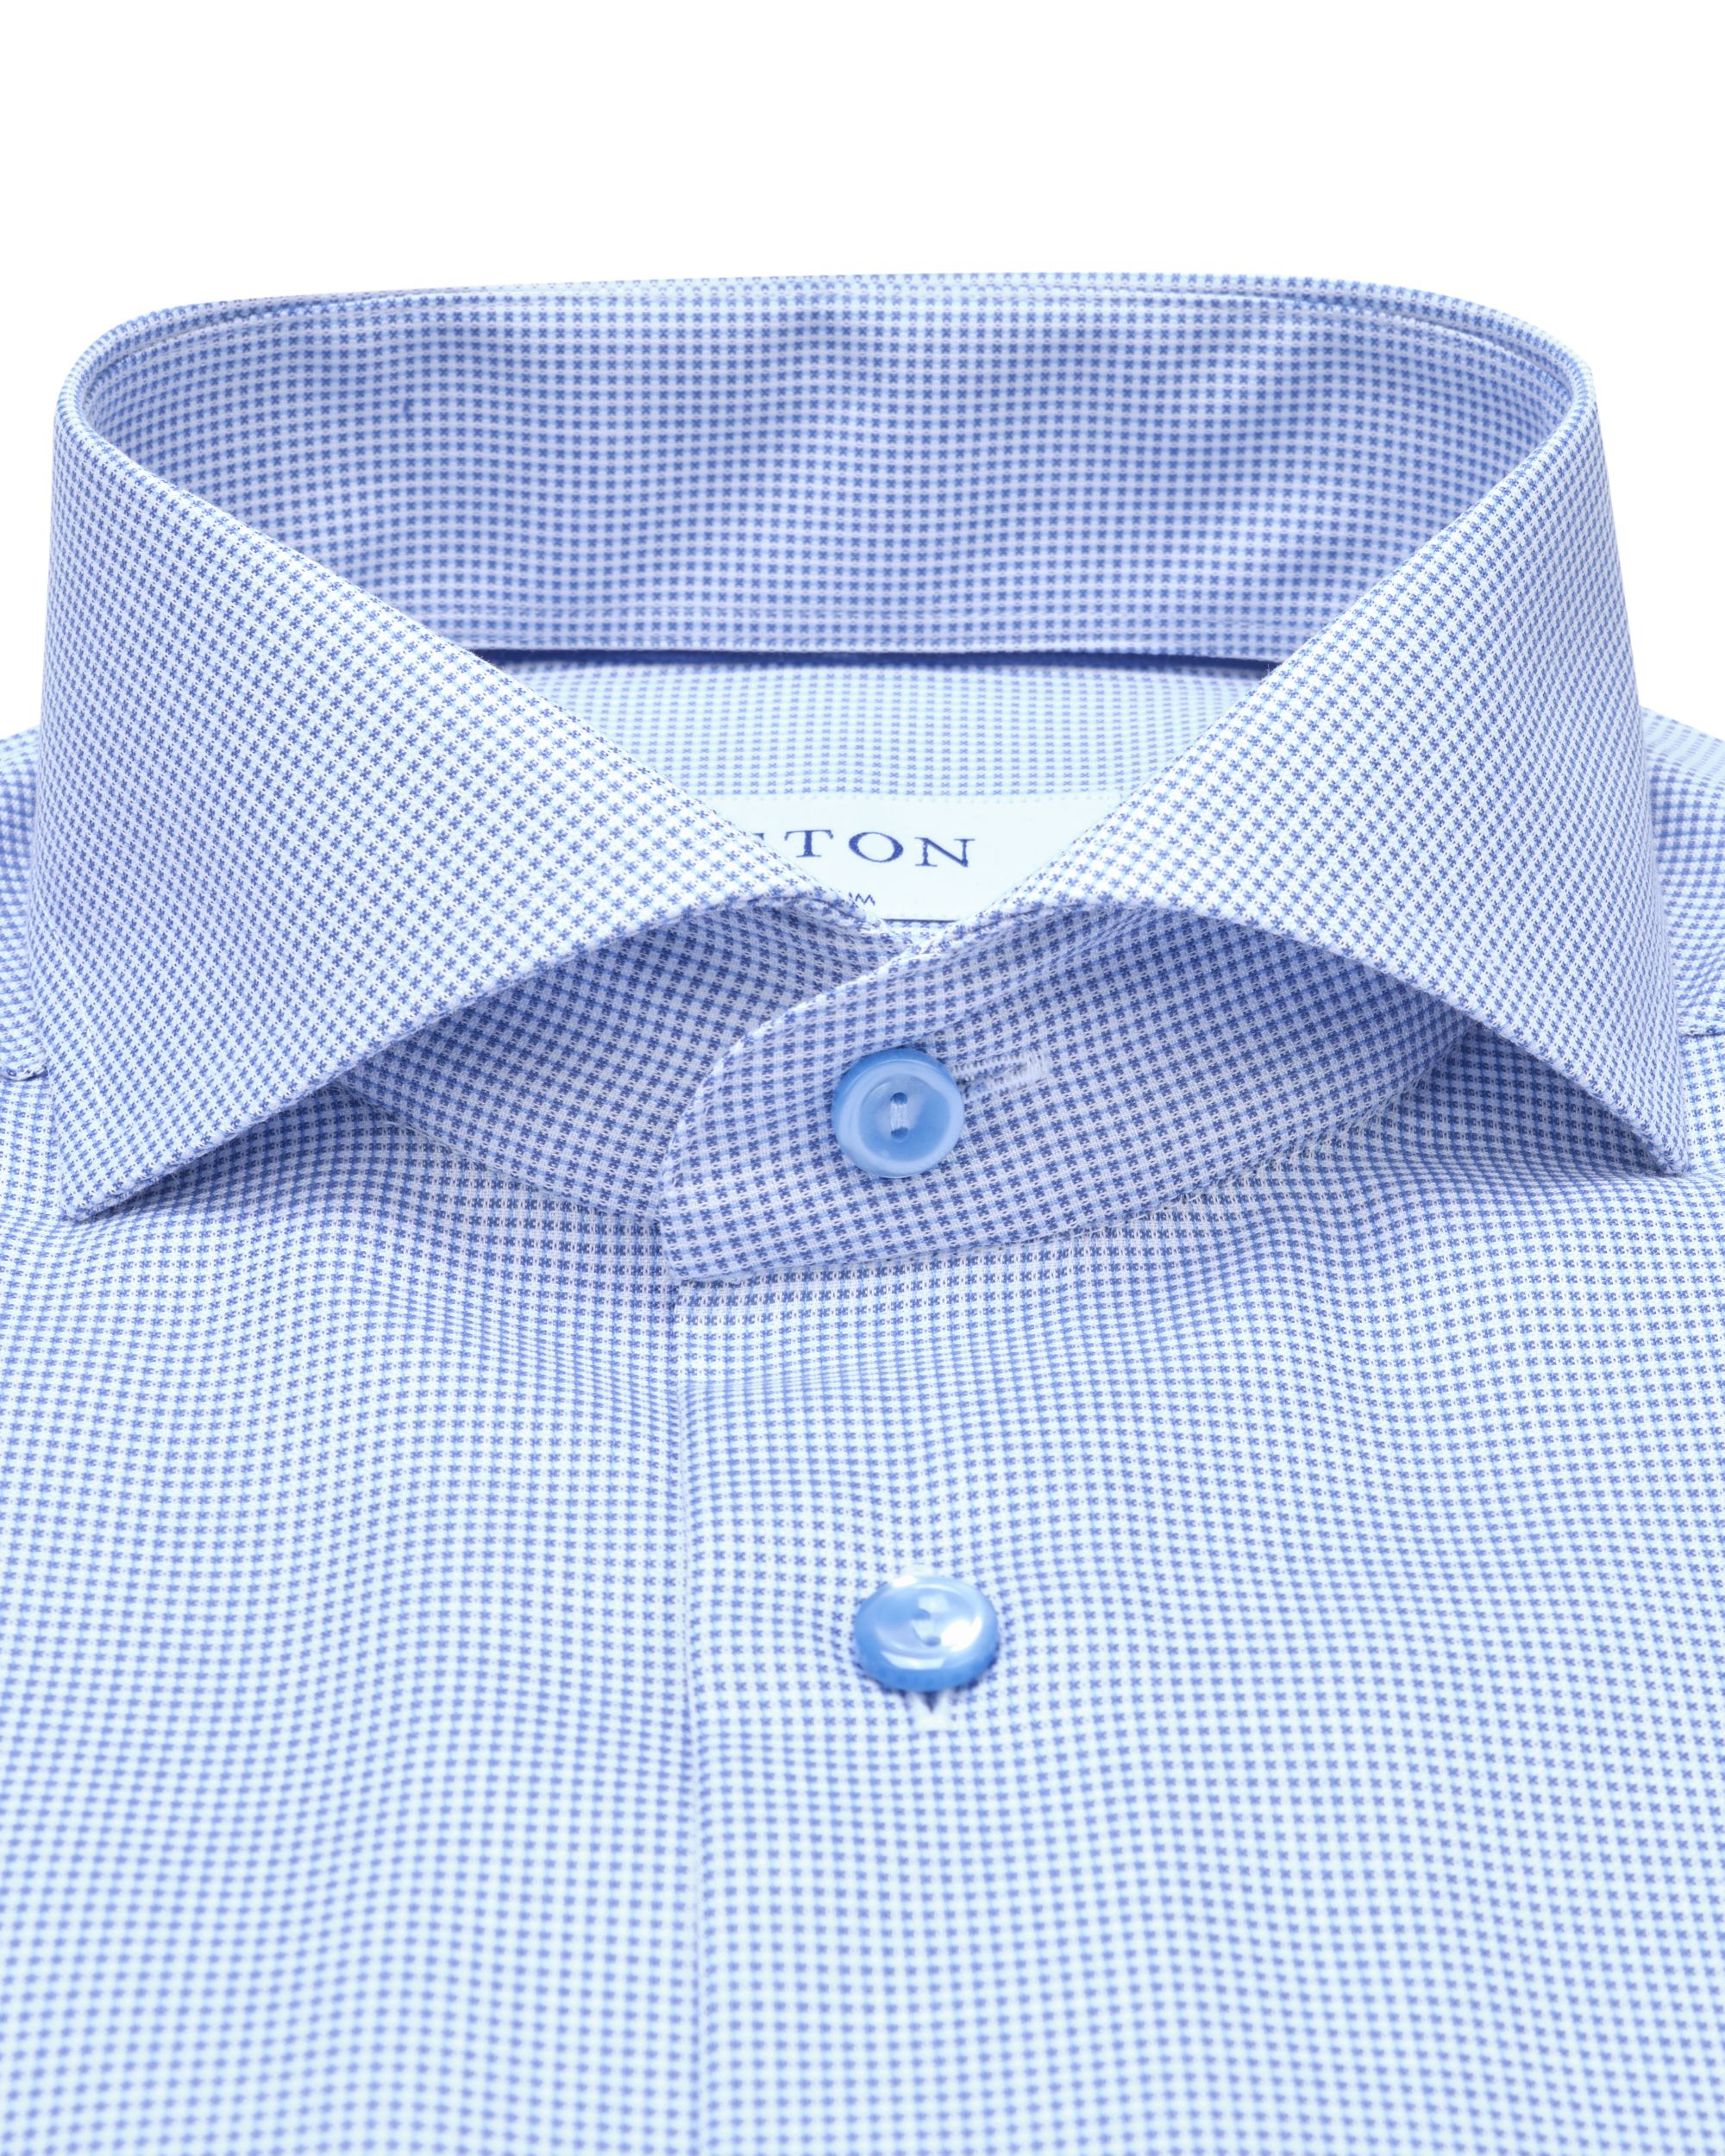 ETON Overhemd LM Blauw 078826-001-37/38